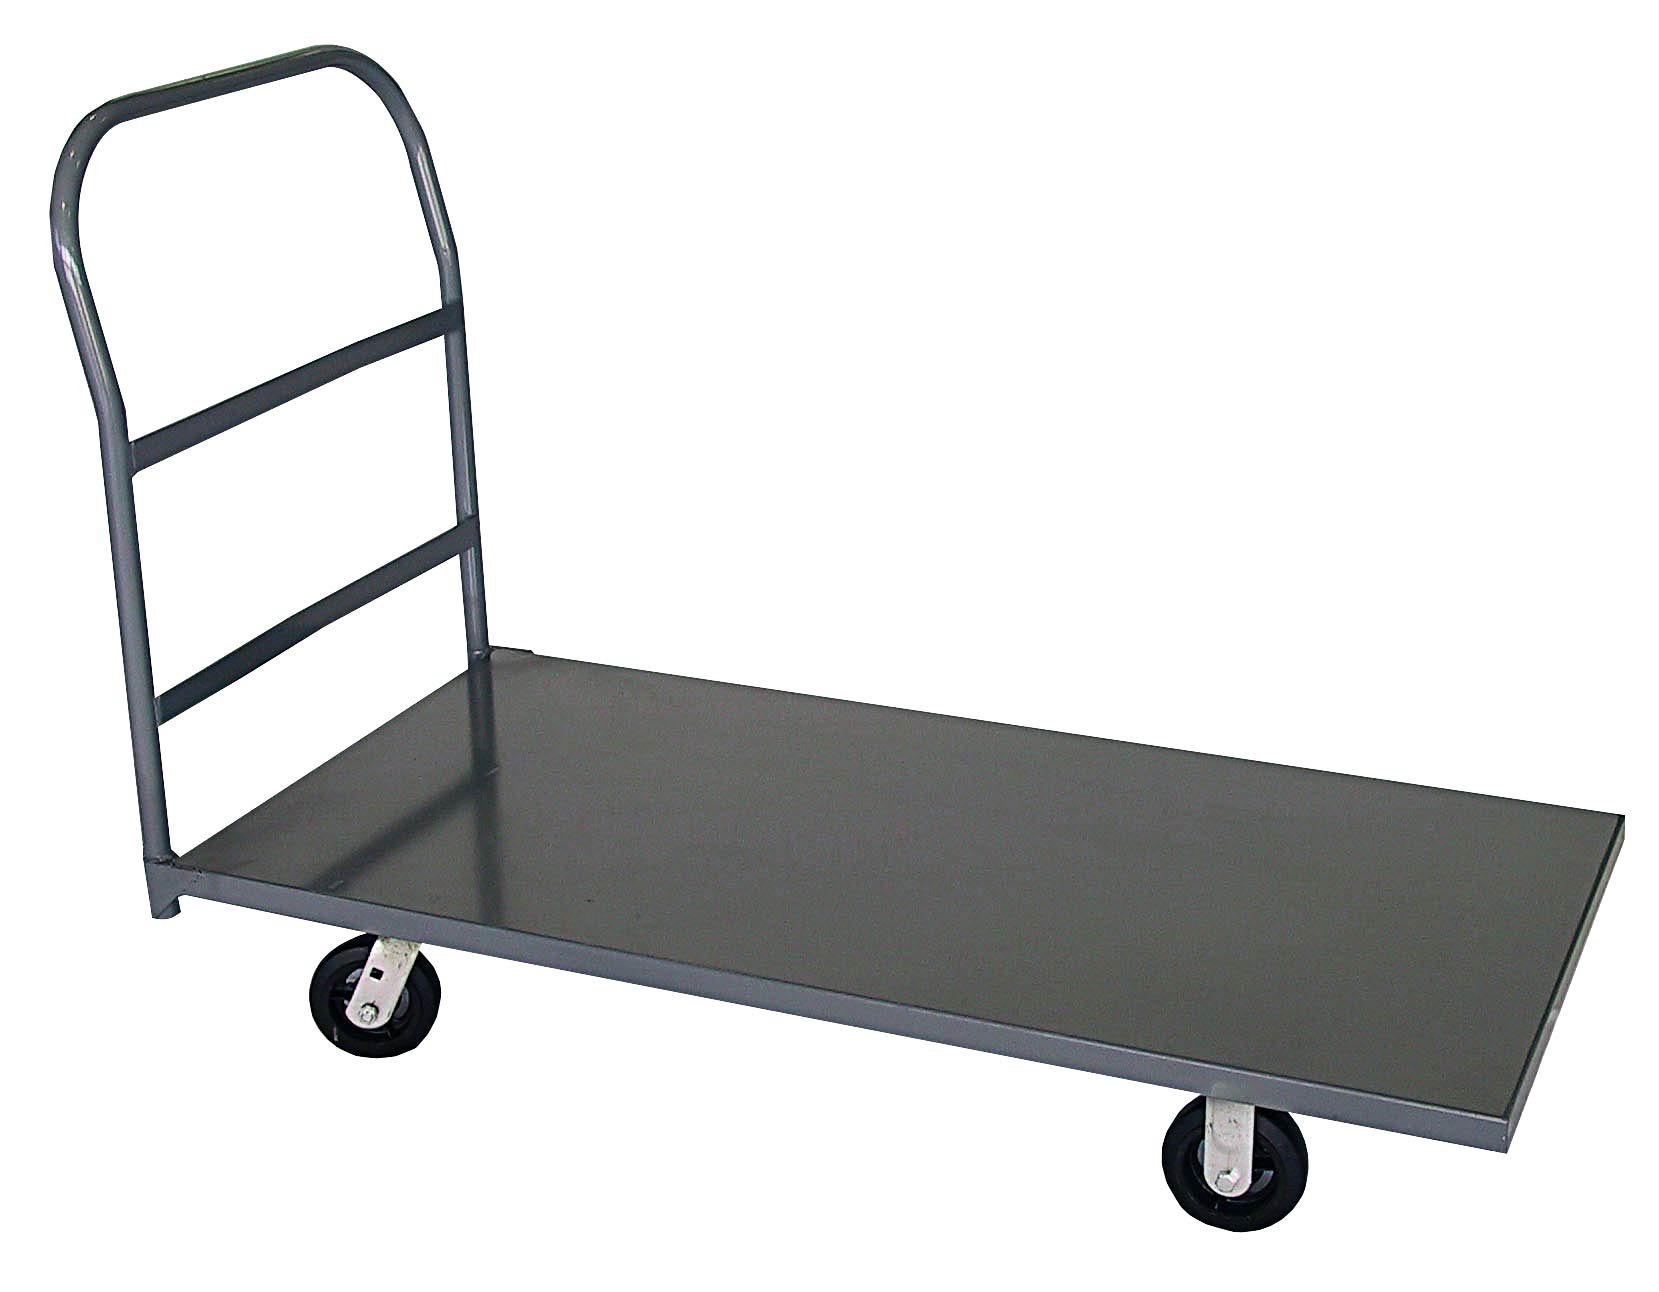 Extra Heavy Duty All Steel Platform Cart: Material Handling Equipment